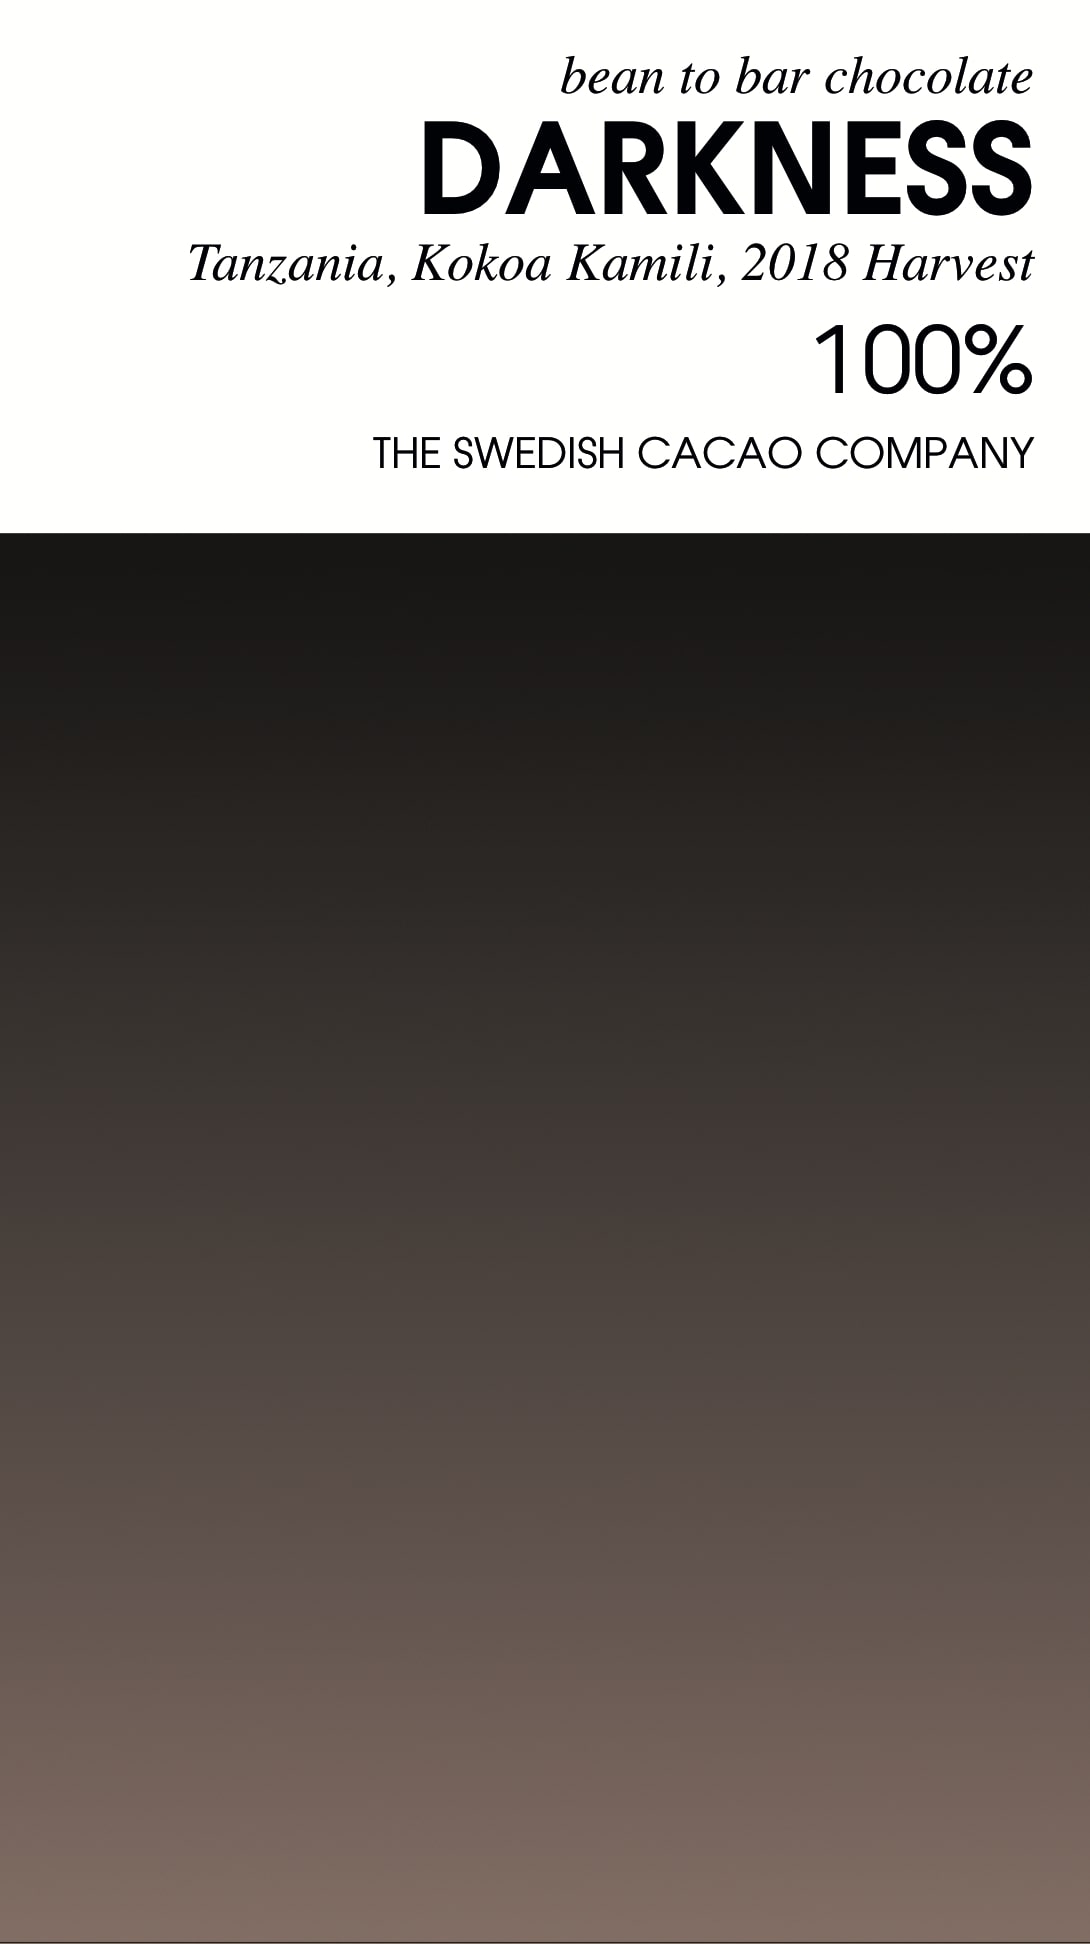 Kakaomasse 100 Prozent Tansania - Svenska Kakao - Verpackung mit Verlauf von Dunkelbraun zu schwarz